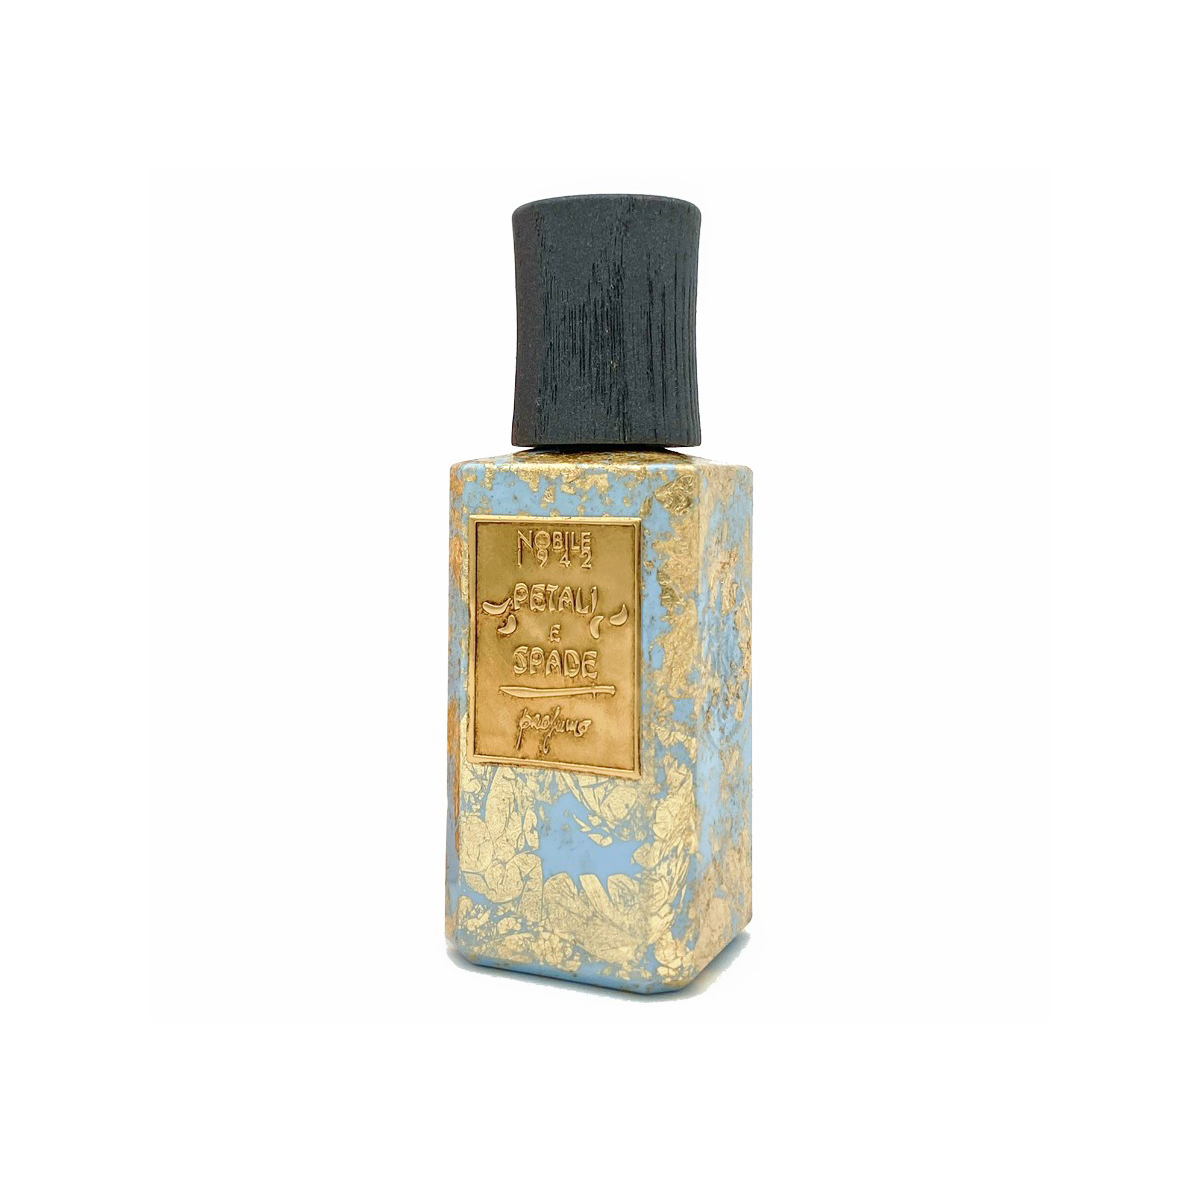 PETALI e SPADE Extrait de parfum 75ml - Nobile 1942